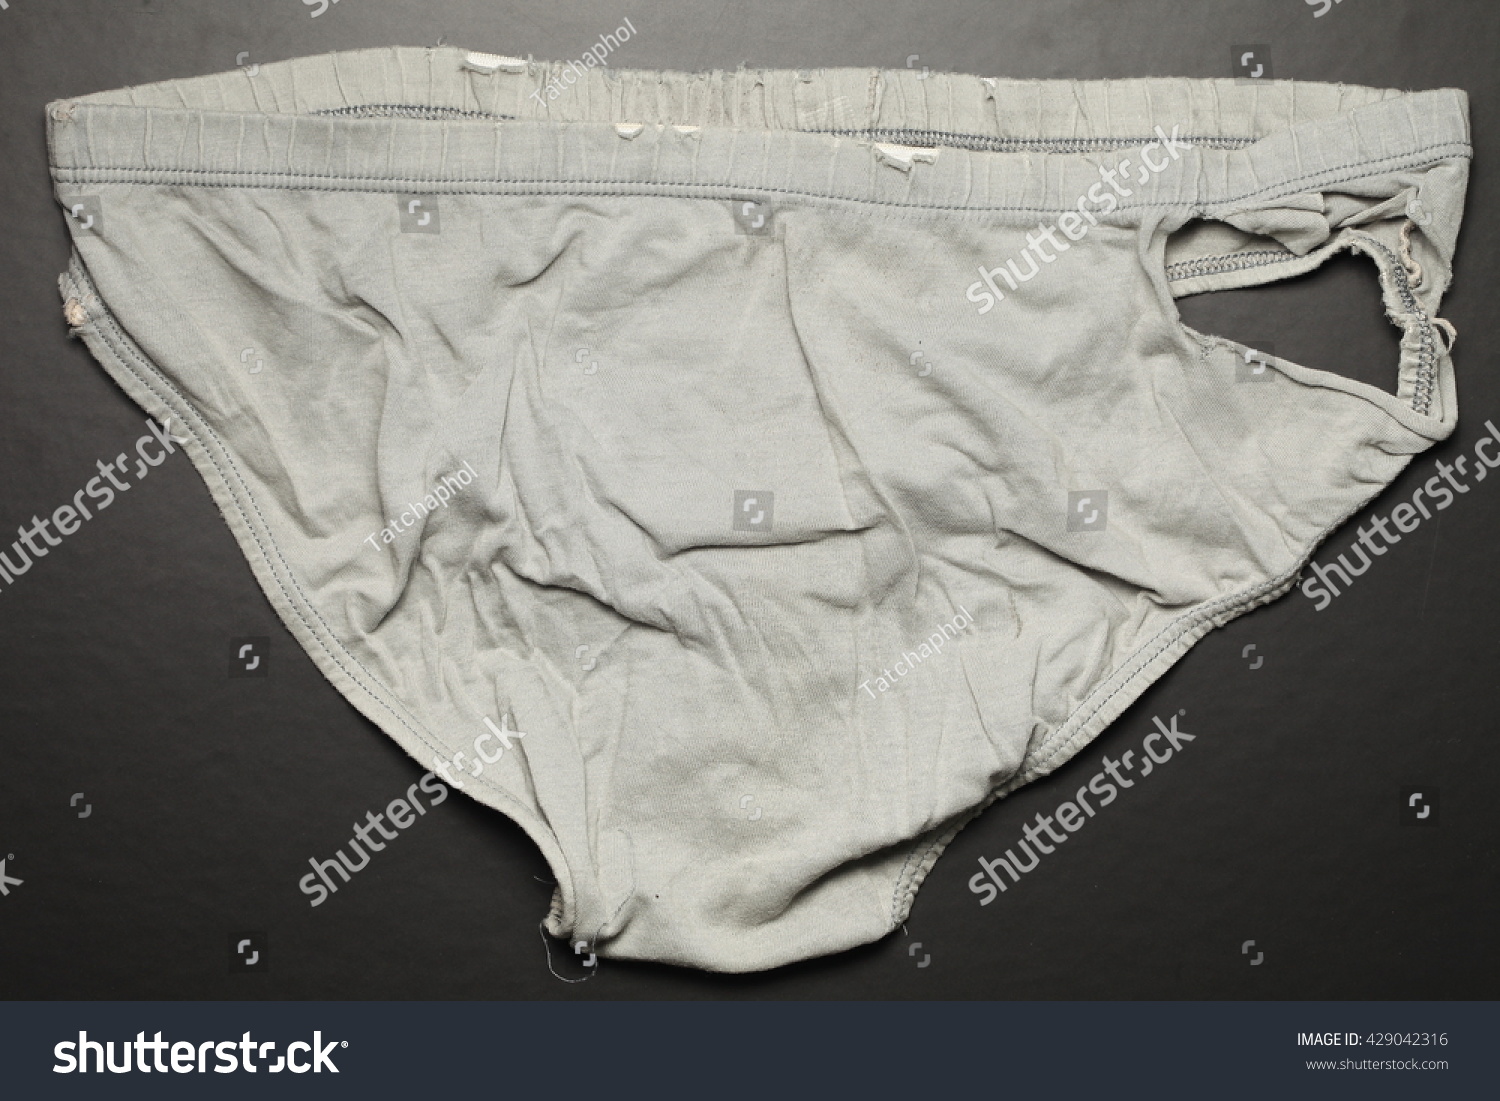 Torn underwear